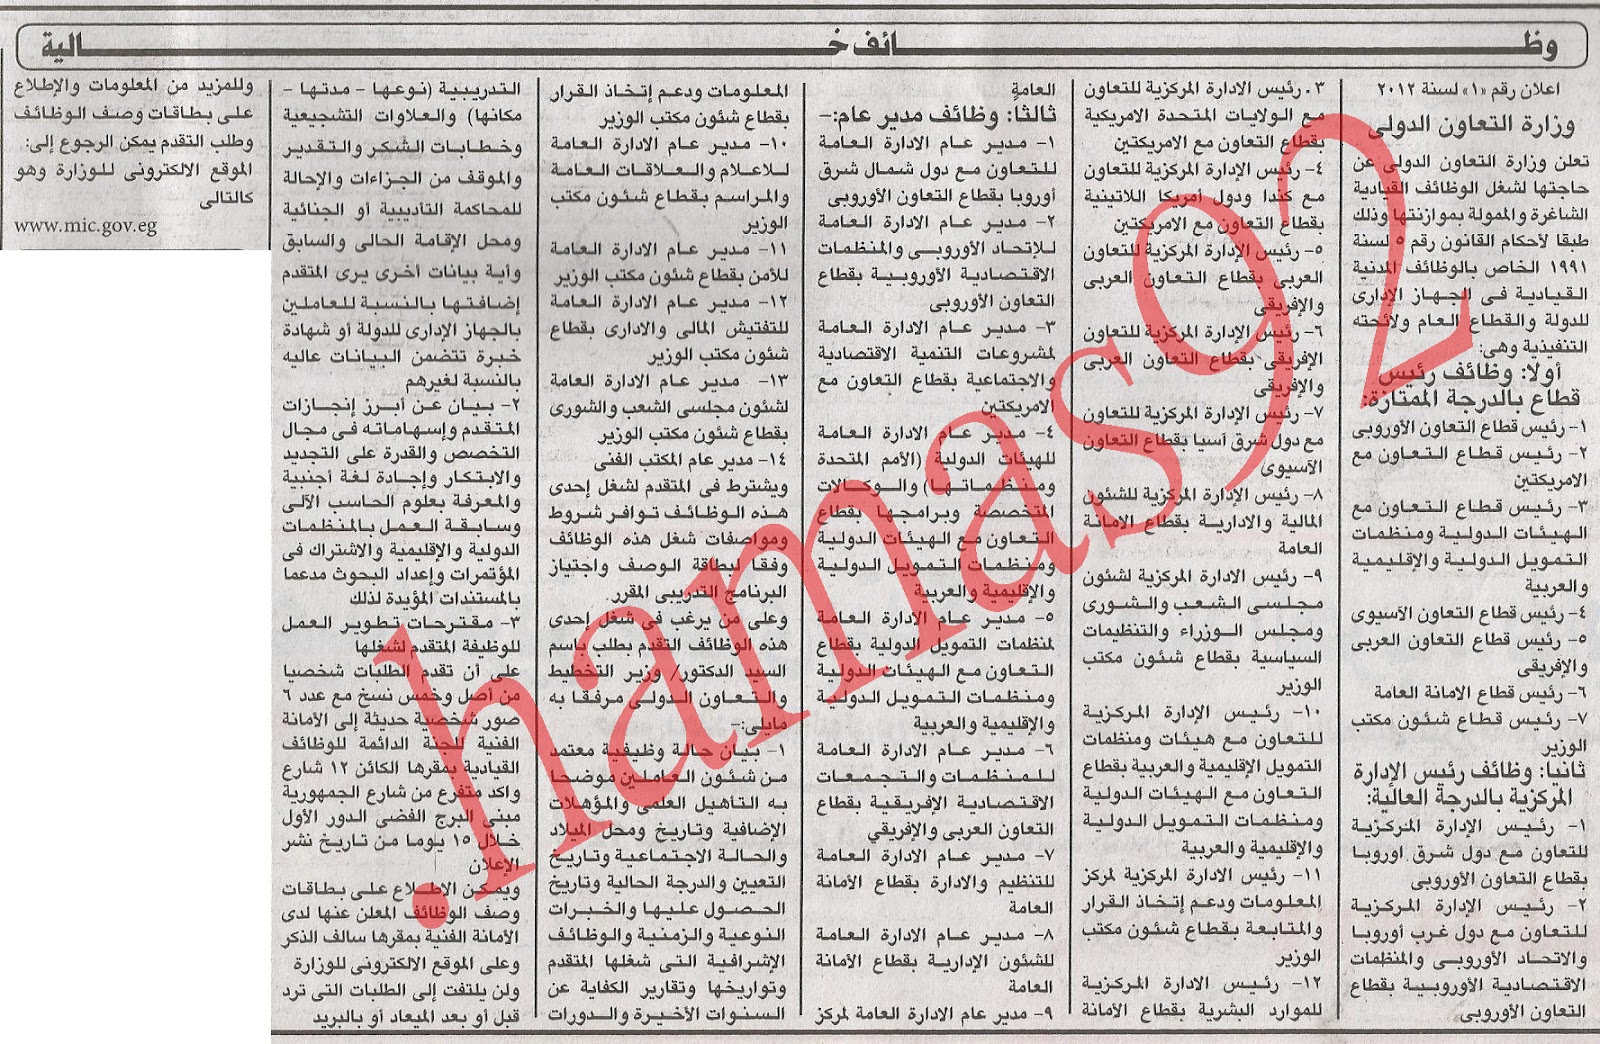 اعلانات وظائف خالية من جريدة الاهرام الاثنين 1\10\2012  2